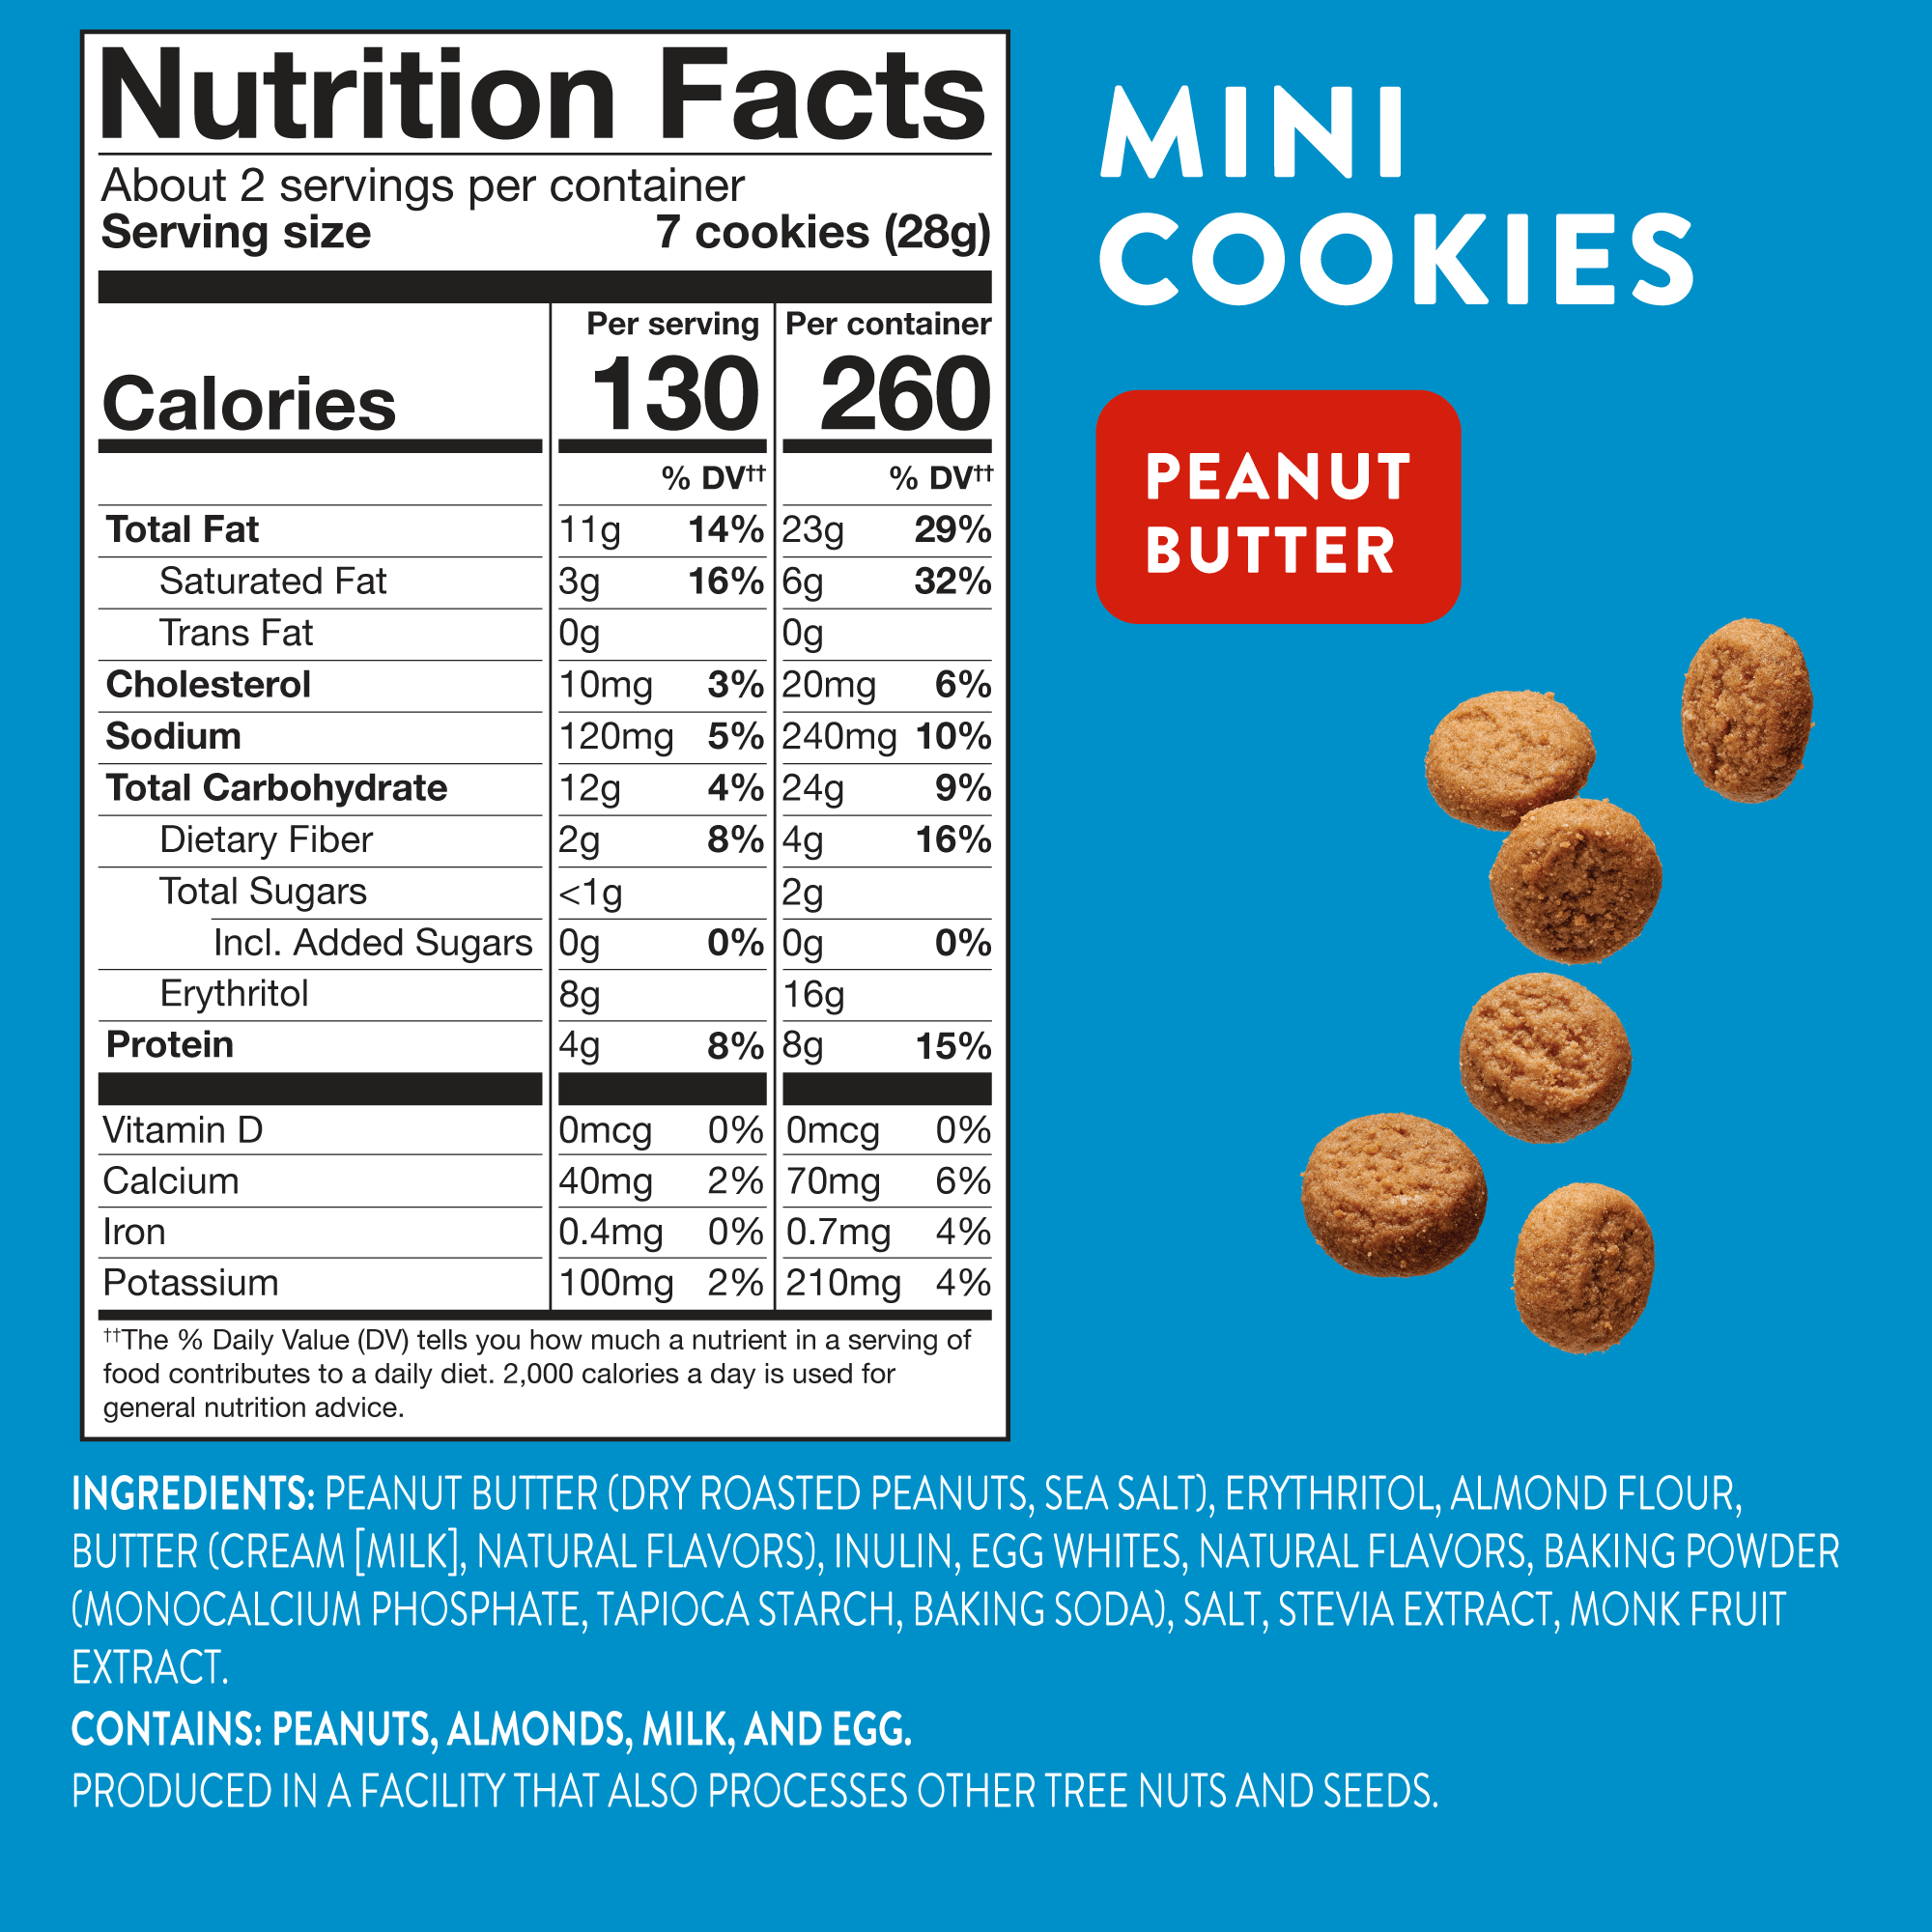 Mini Cookies: Peanut Butter